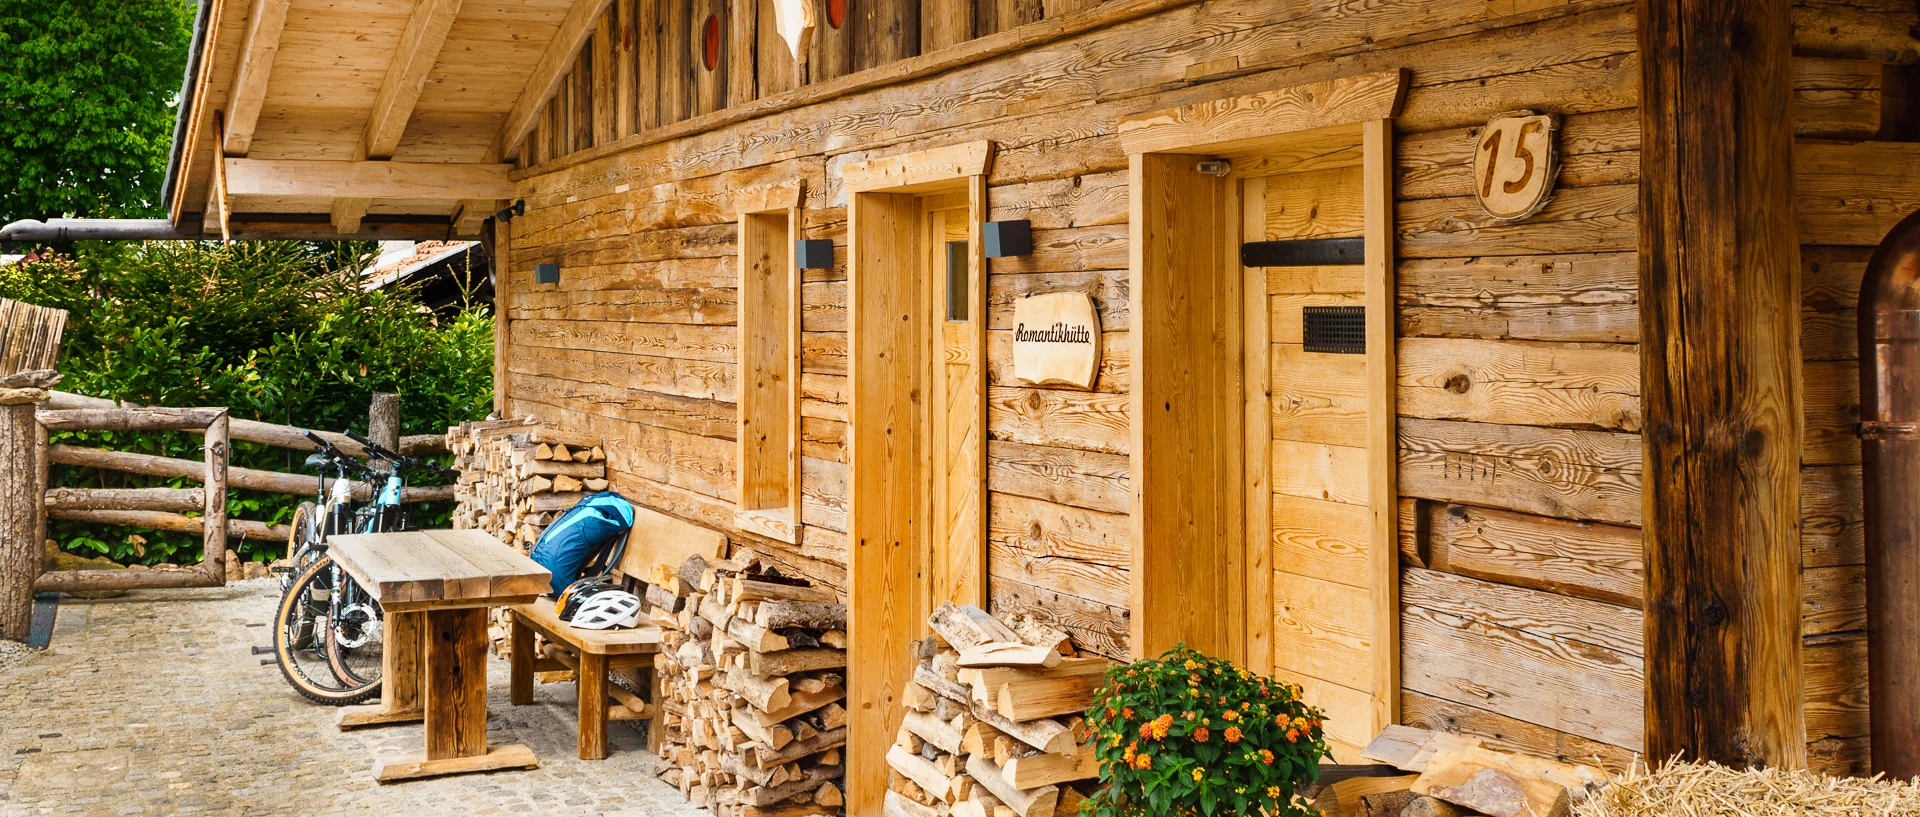 frisch-ferienhaus-zwiesel-luxus-chalet-nationalpark-ausblick-1600